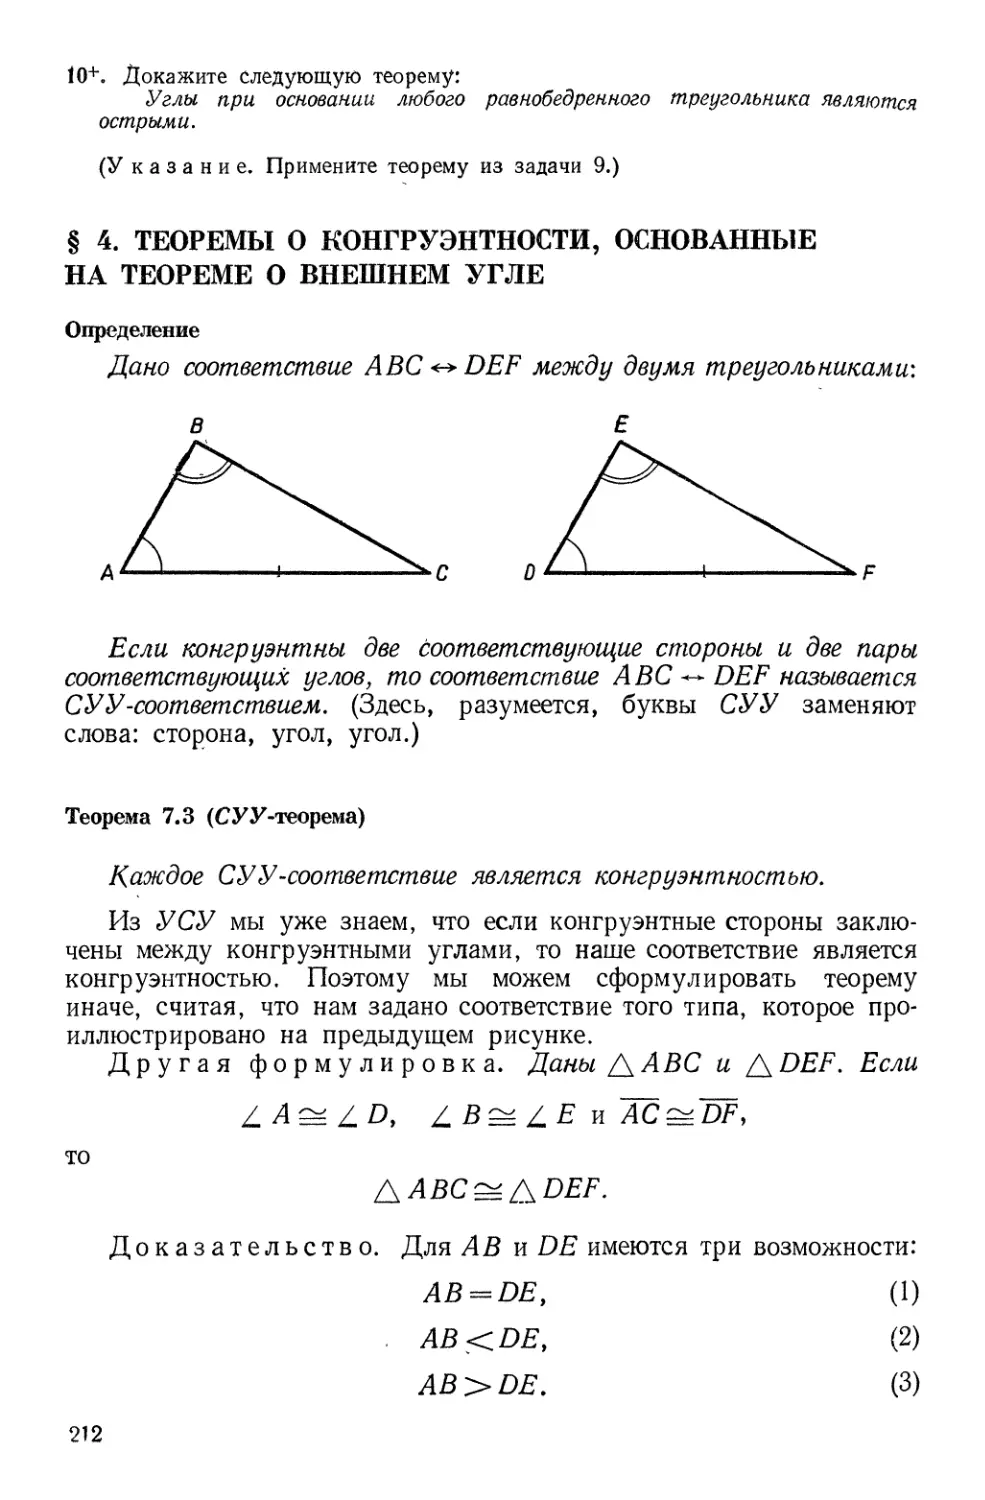 § 4. Теоремы о конгруэнтности, основанные на теореме о внешнем угле